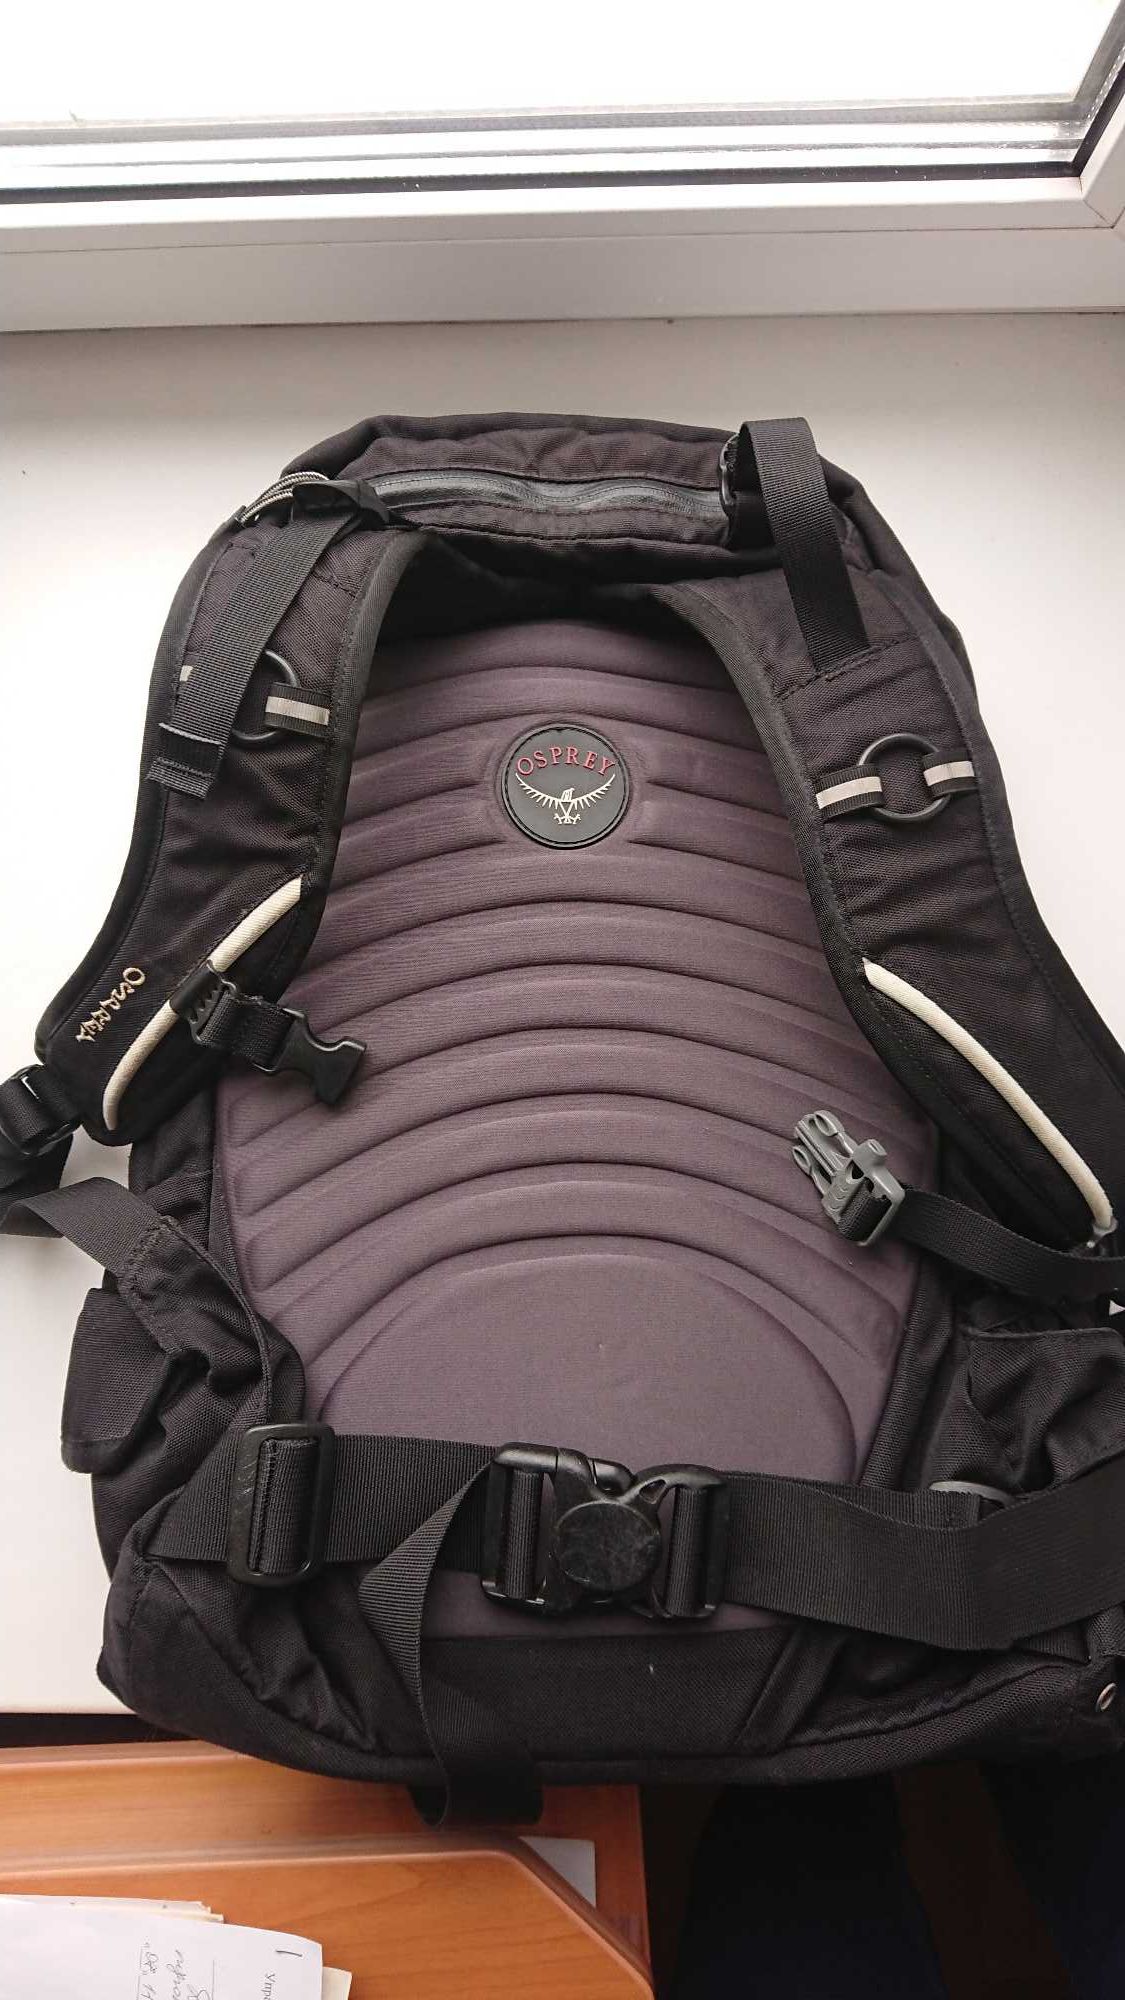 Мото/вело/треккинговый/городской/спортивный рюкзак Osprey. USA.